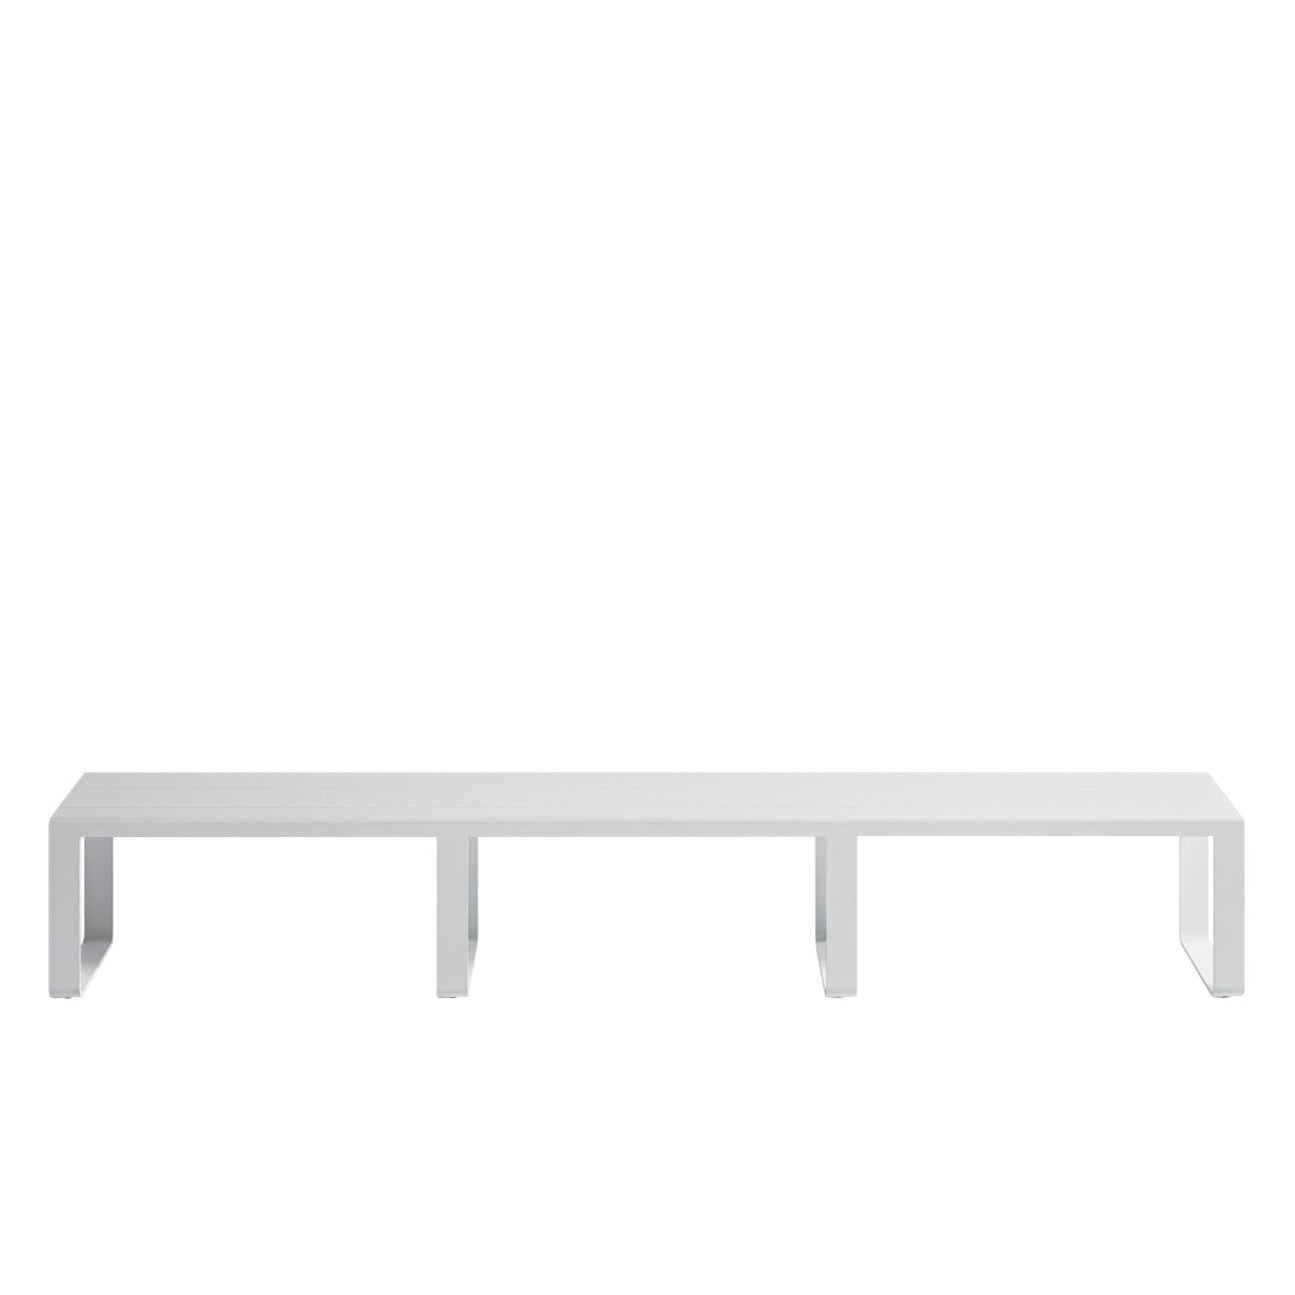 Banc plat Gandia Blasco 270 cm, blanc avec revêtement gris clair - pièce d'exposition